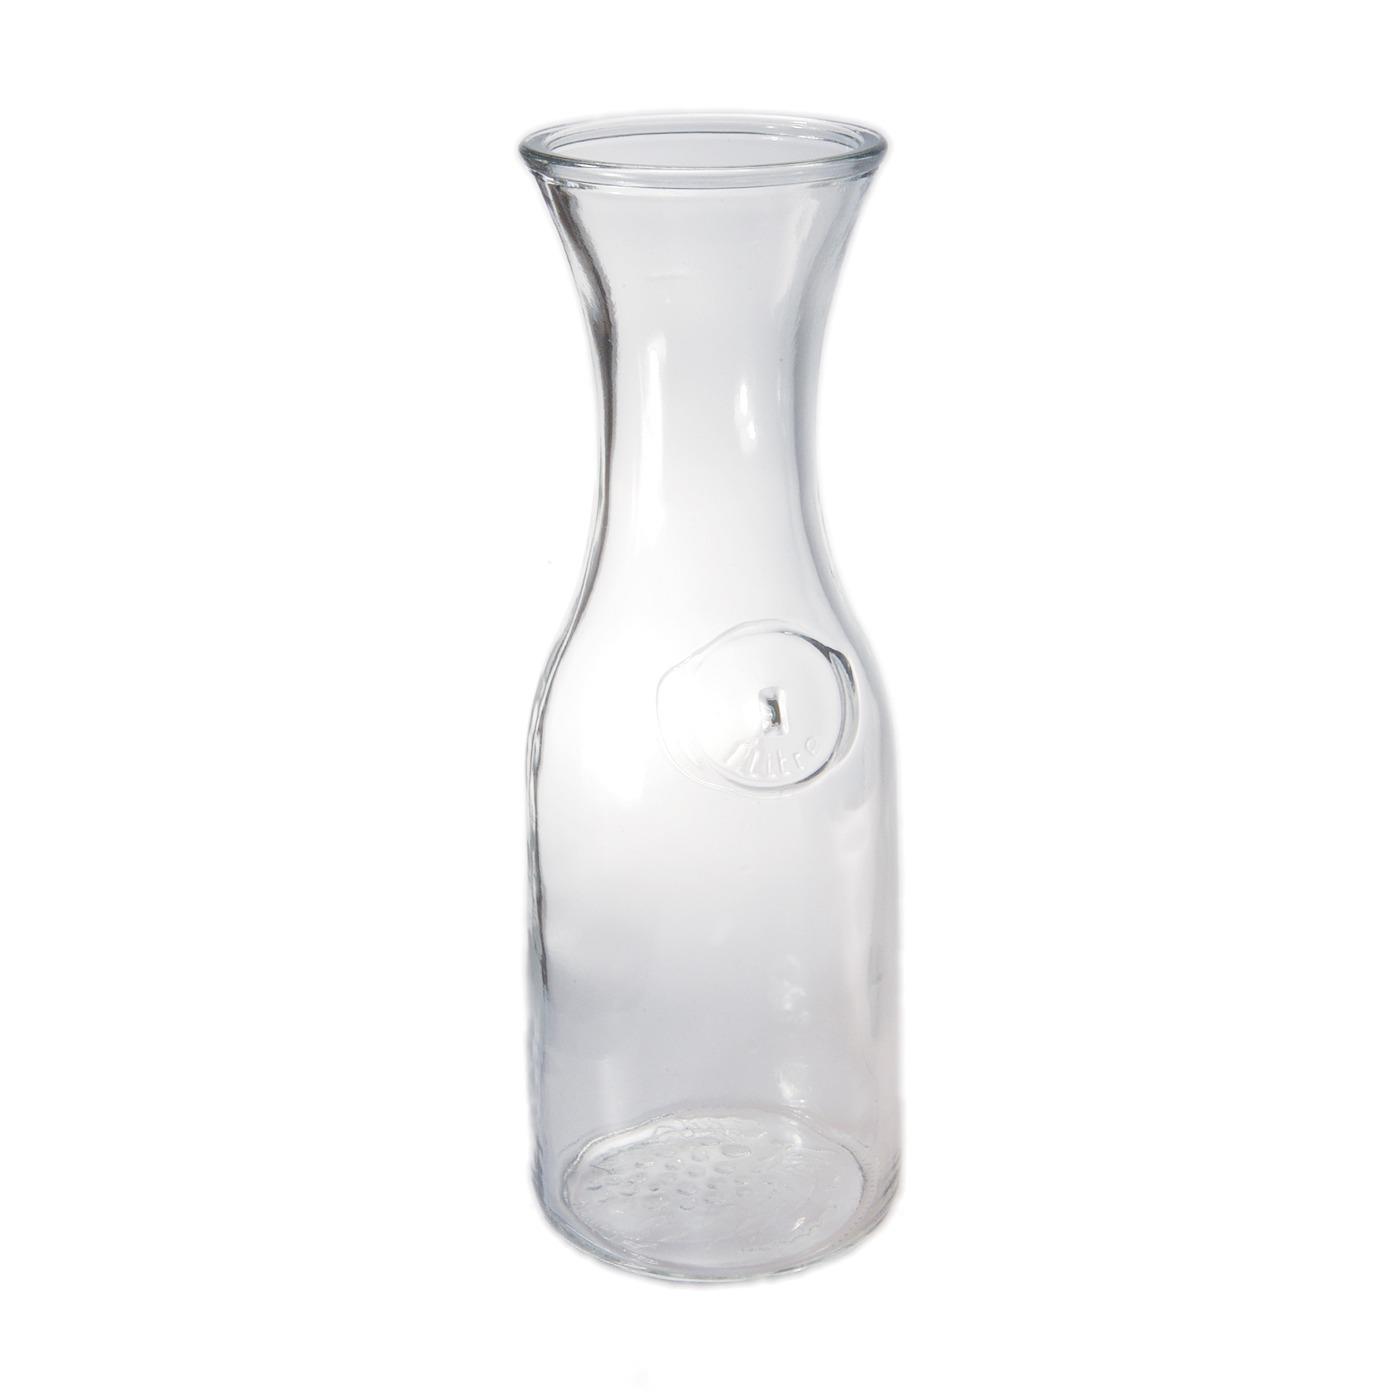 Glass Wine Carafe - 1 Liter